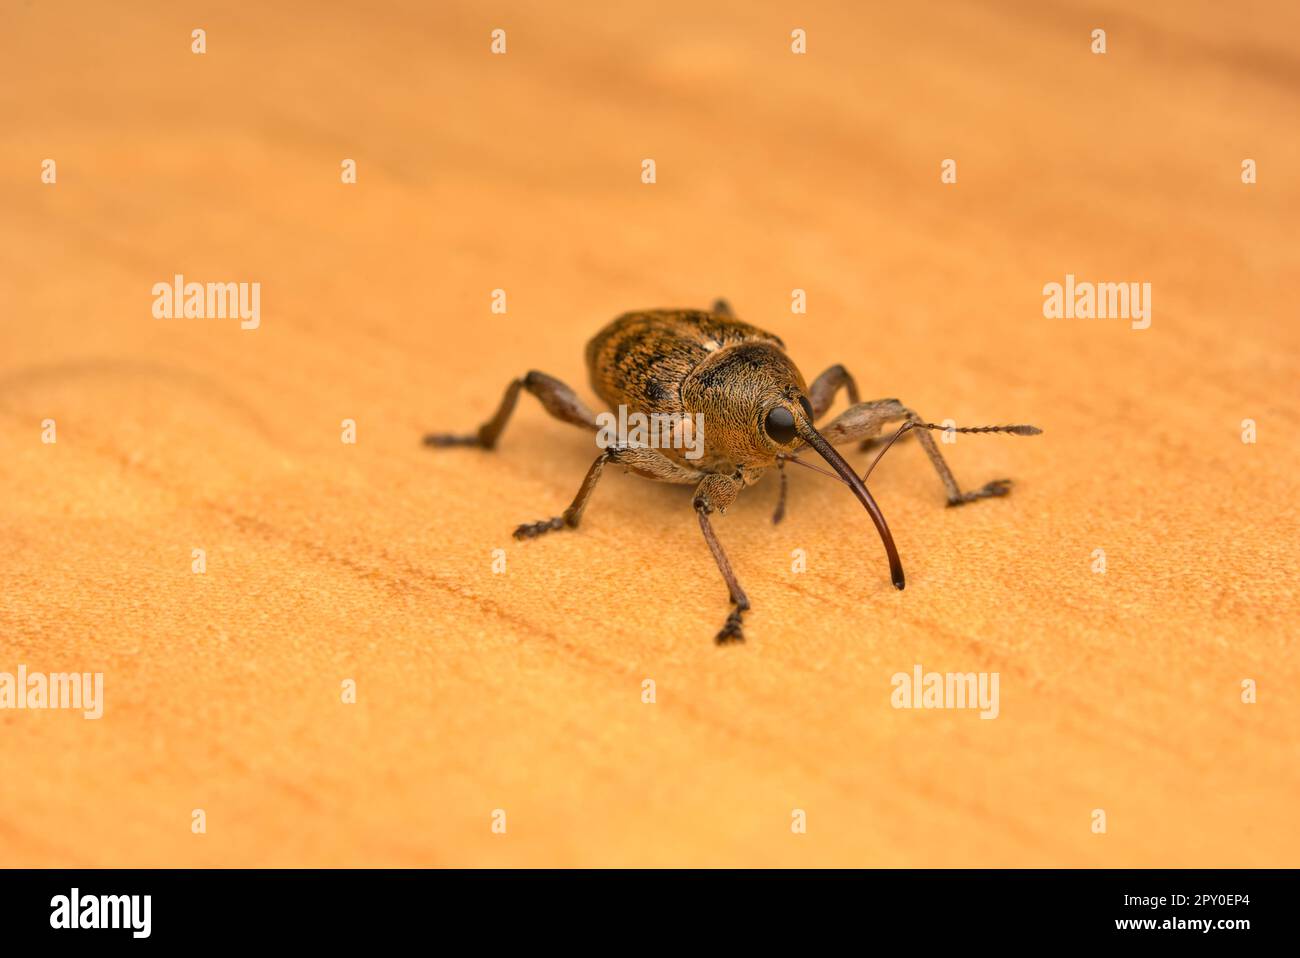 Single Weevil (curculio glandium) sur sol en bois, macro photographie d'insectes, nature, biodiversité Banque D'Images